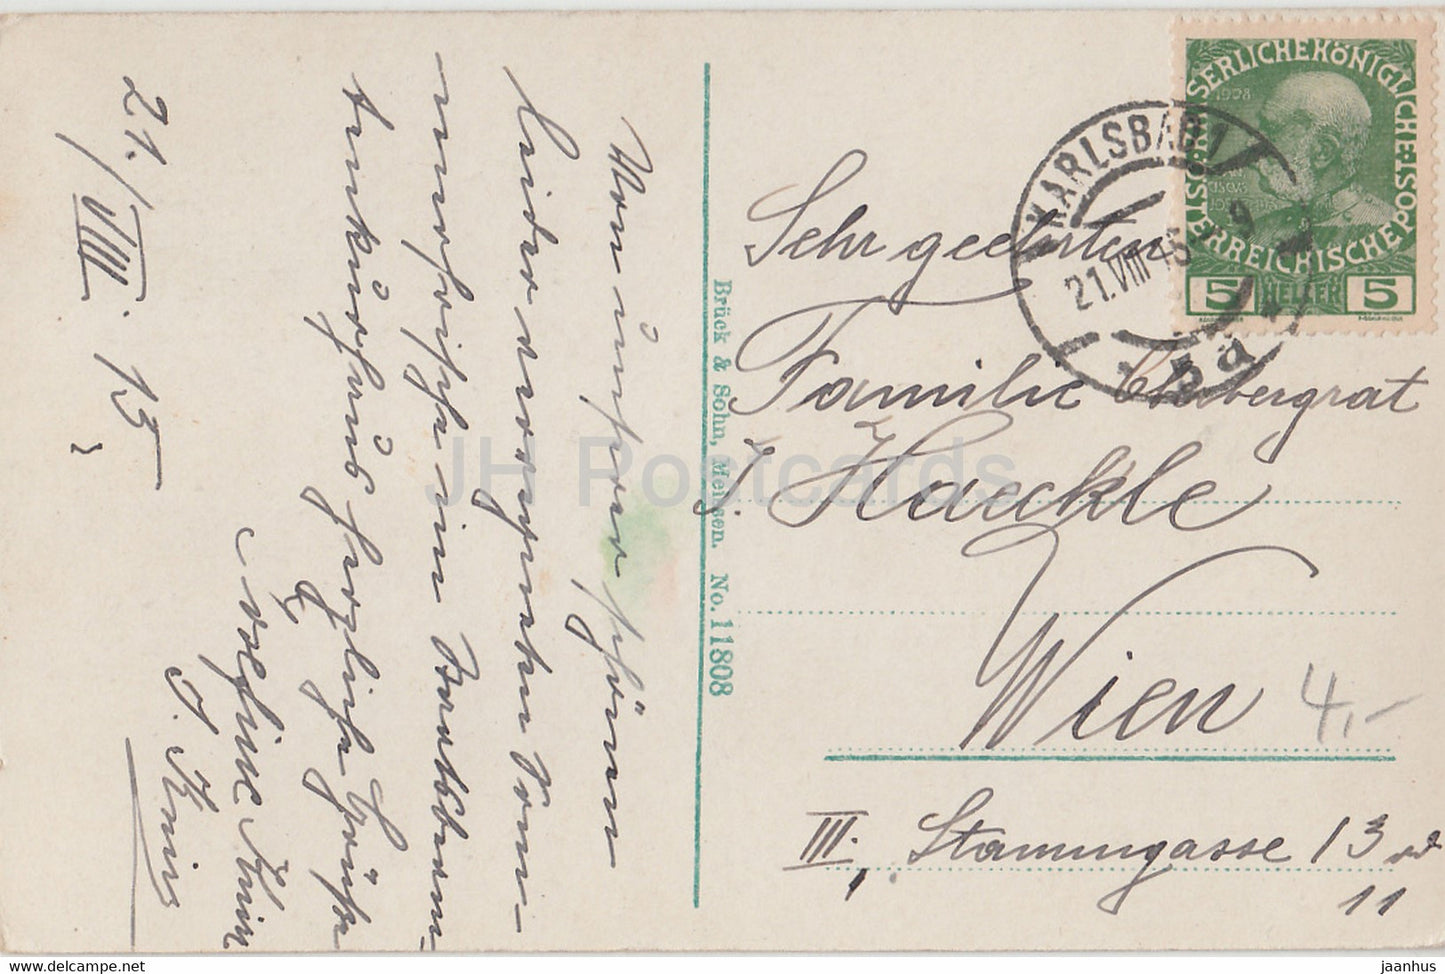 Karlsbad - Karlsbad - Mühlbrunnenkolonnade - 11808 - alte Postkarte - 1915 - Tschechoslowakei - Tschechische Republik - gebraucht